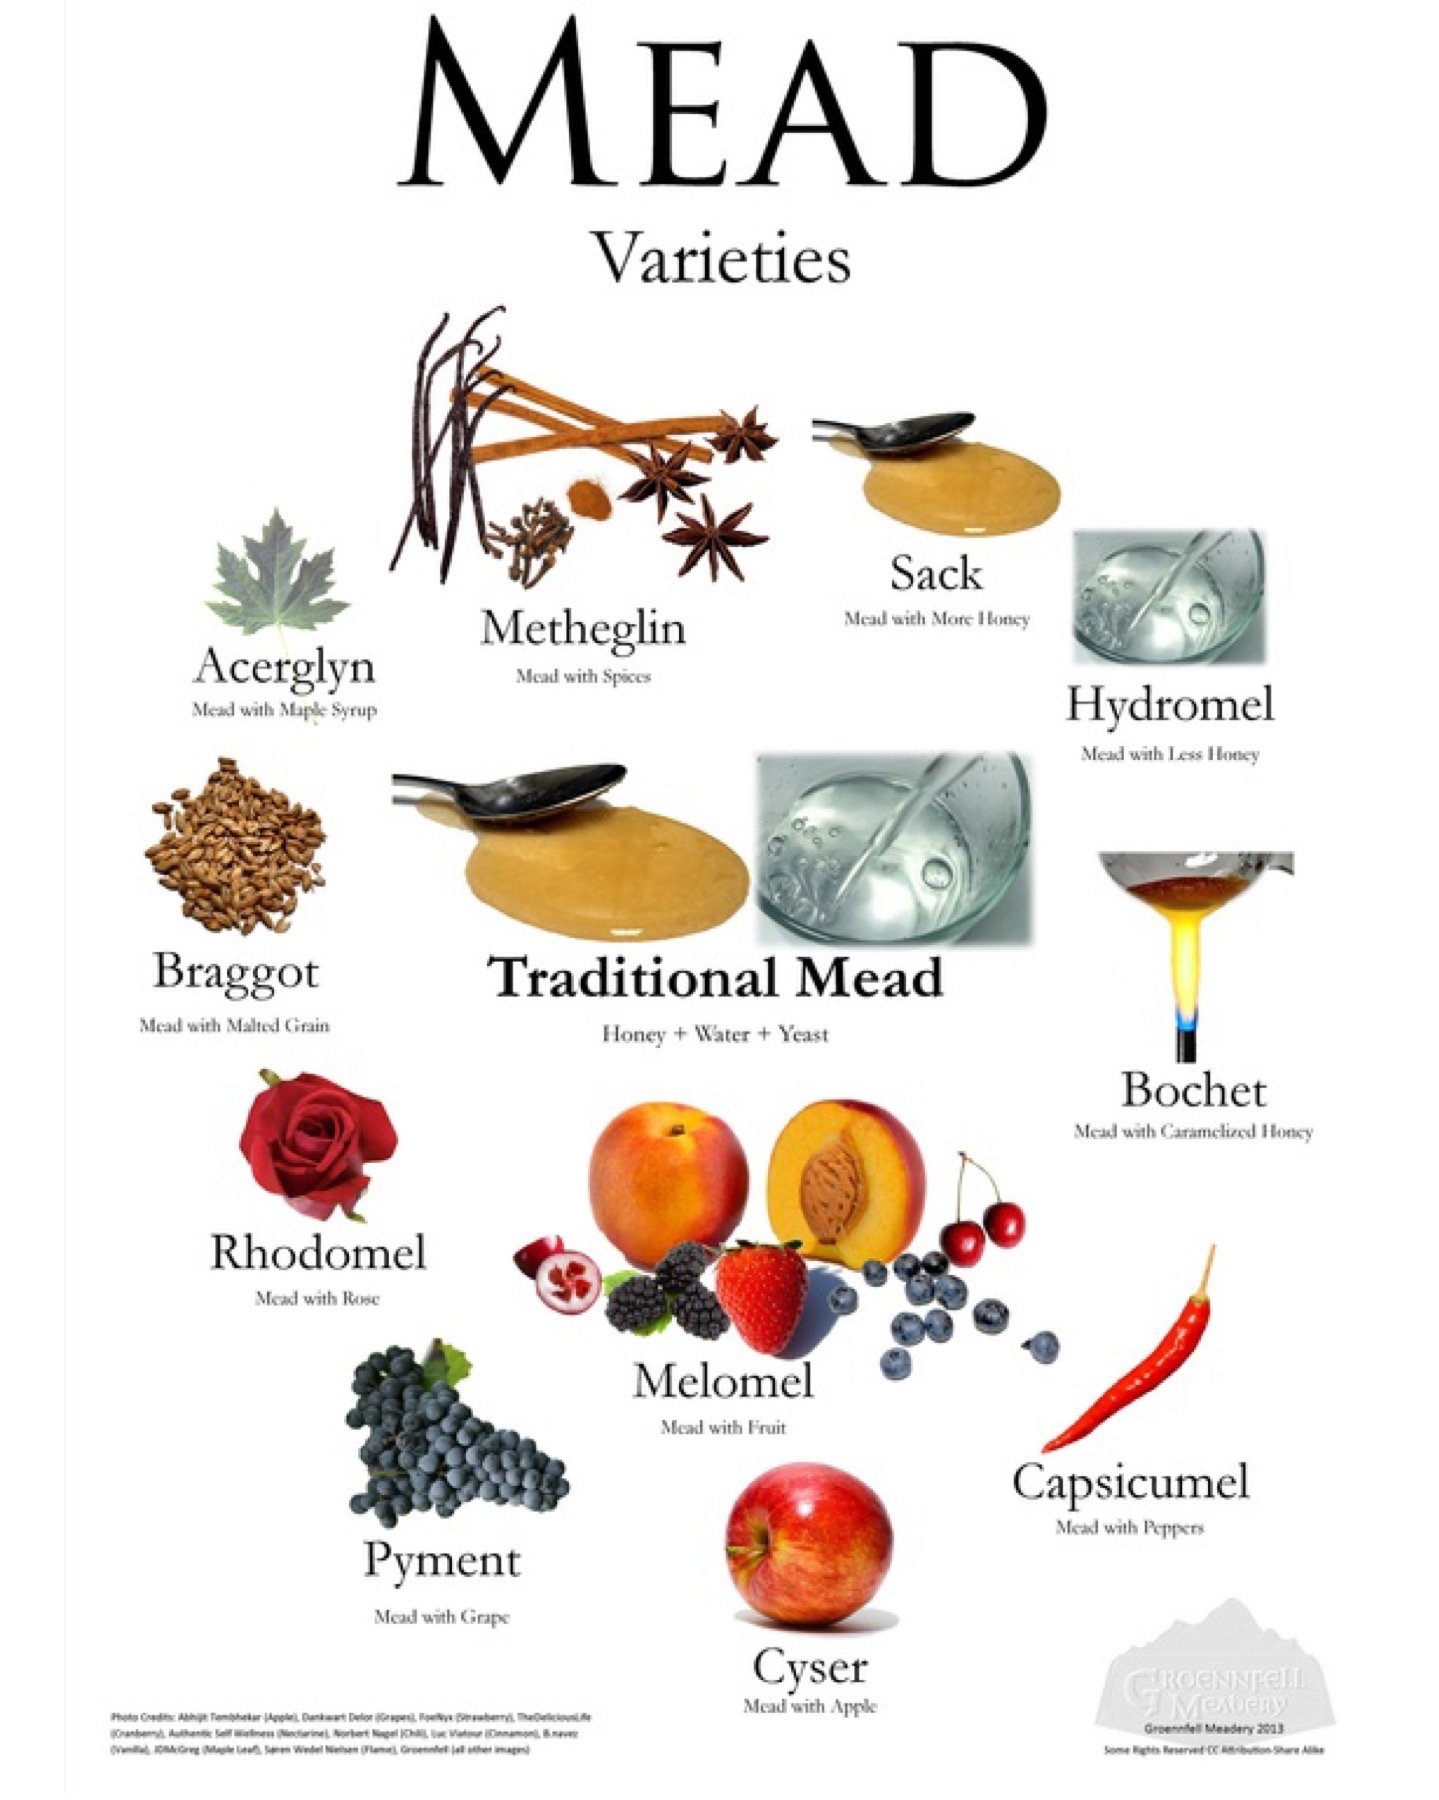 Mead Varieties